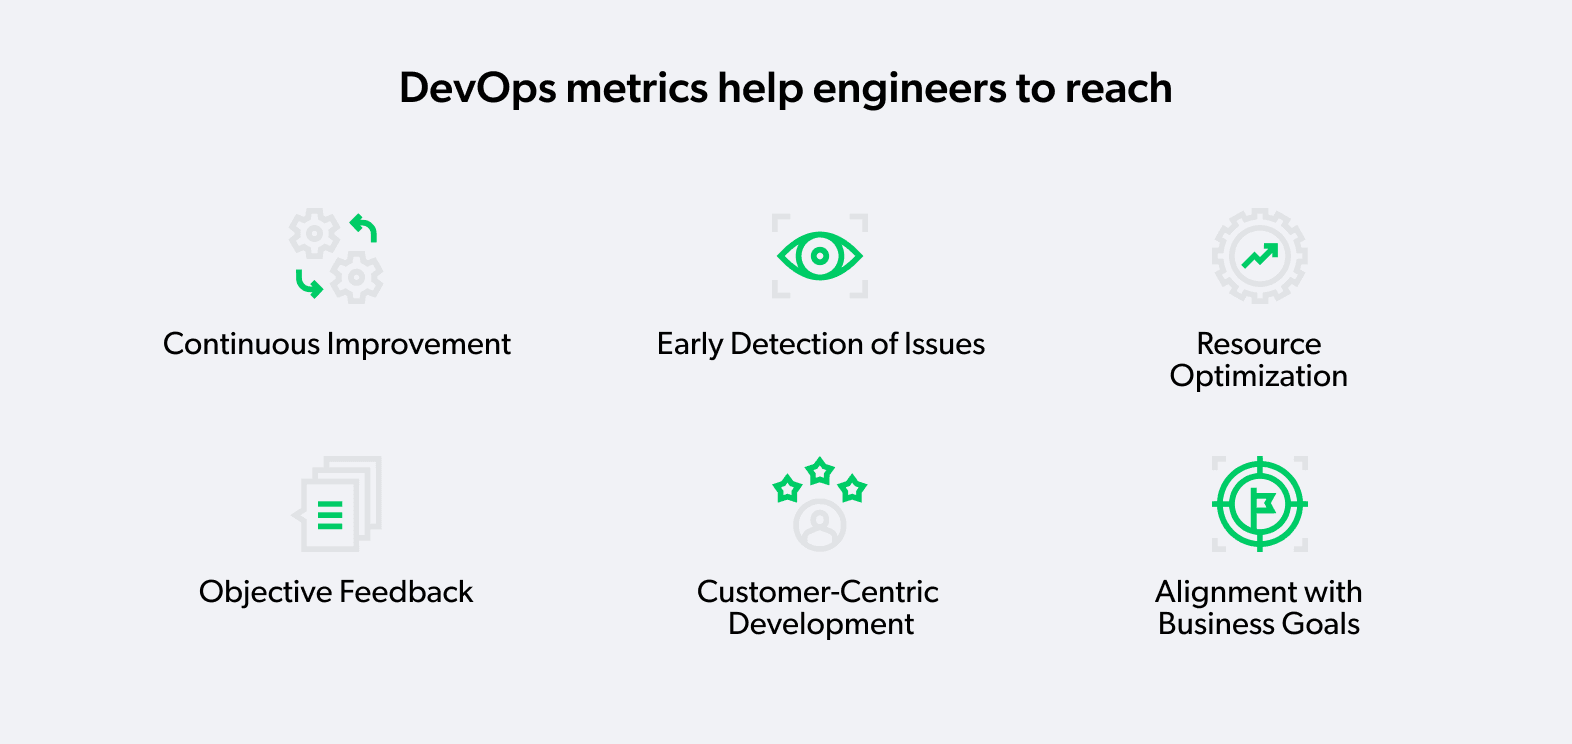 DevOps metrics for engineers